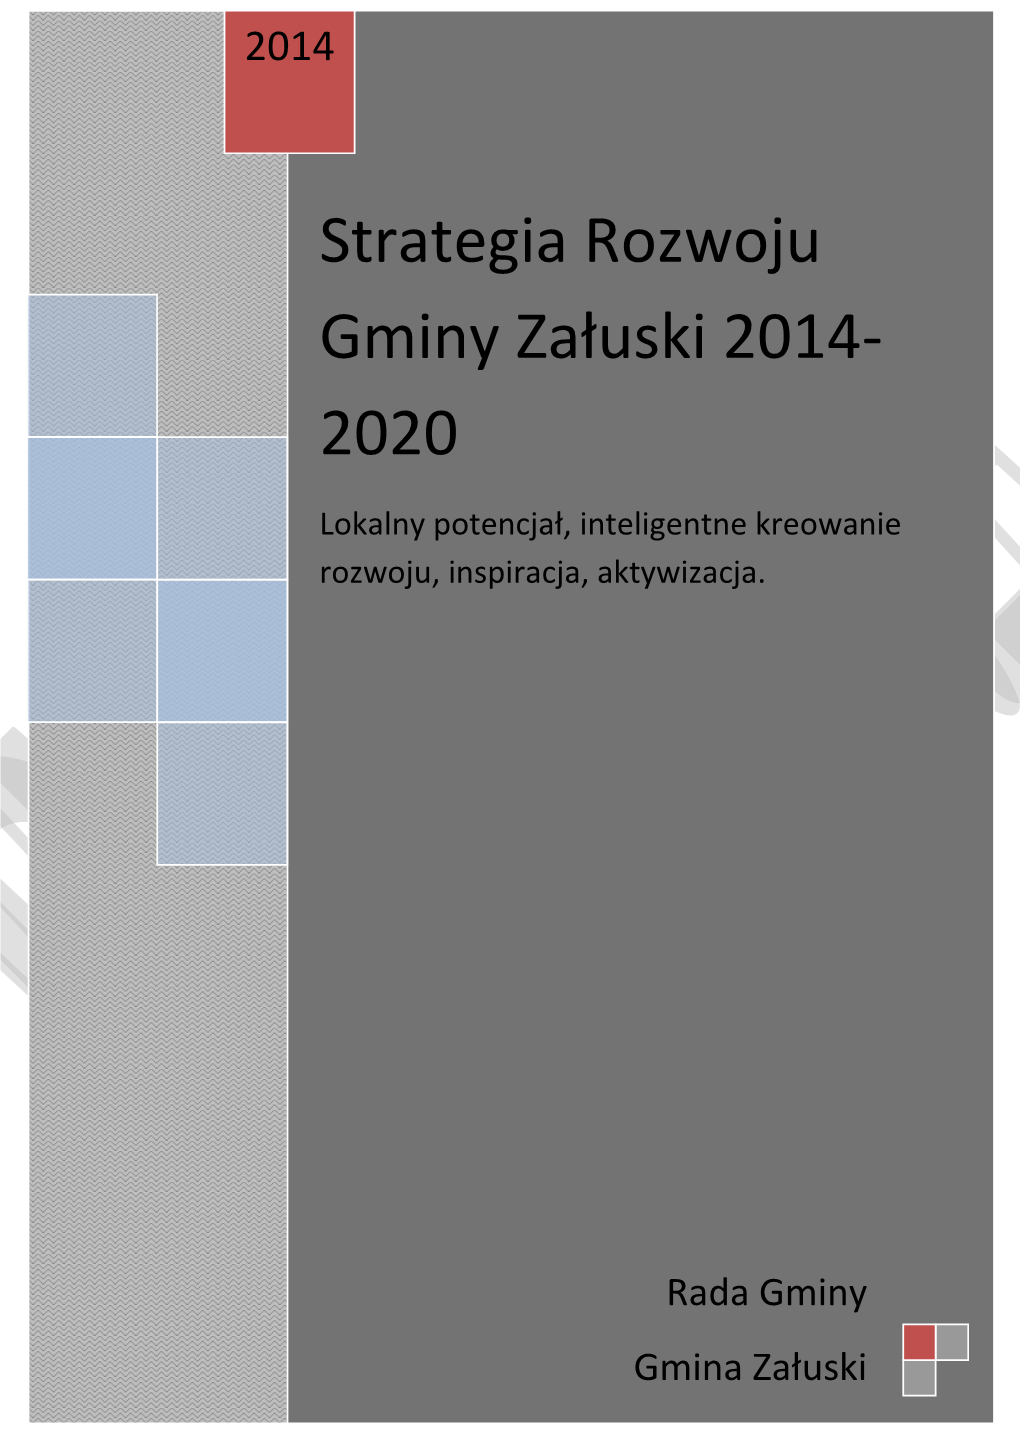 Strategia Rozwoju Gminy Załuski 2014-2020